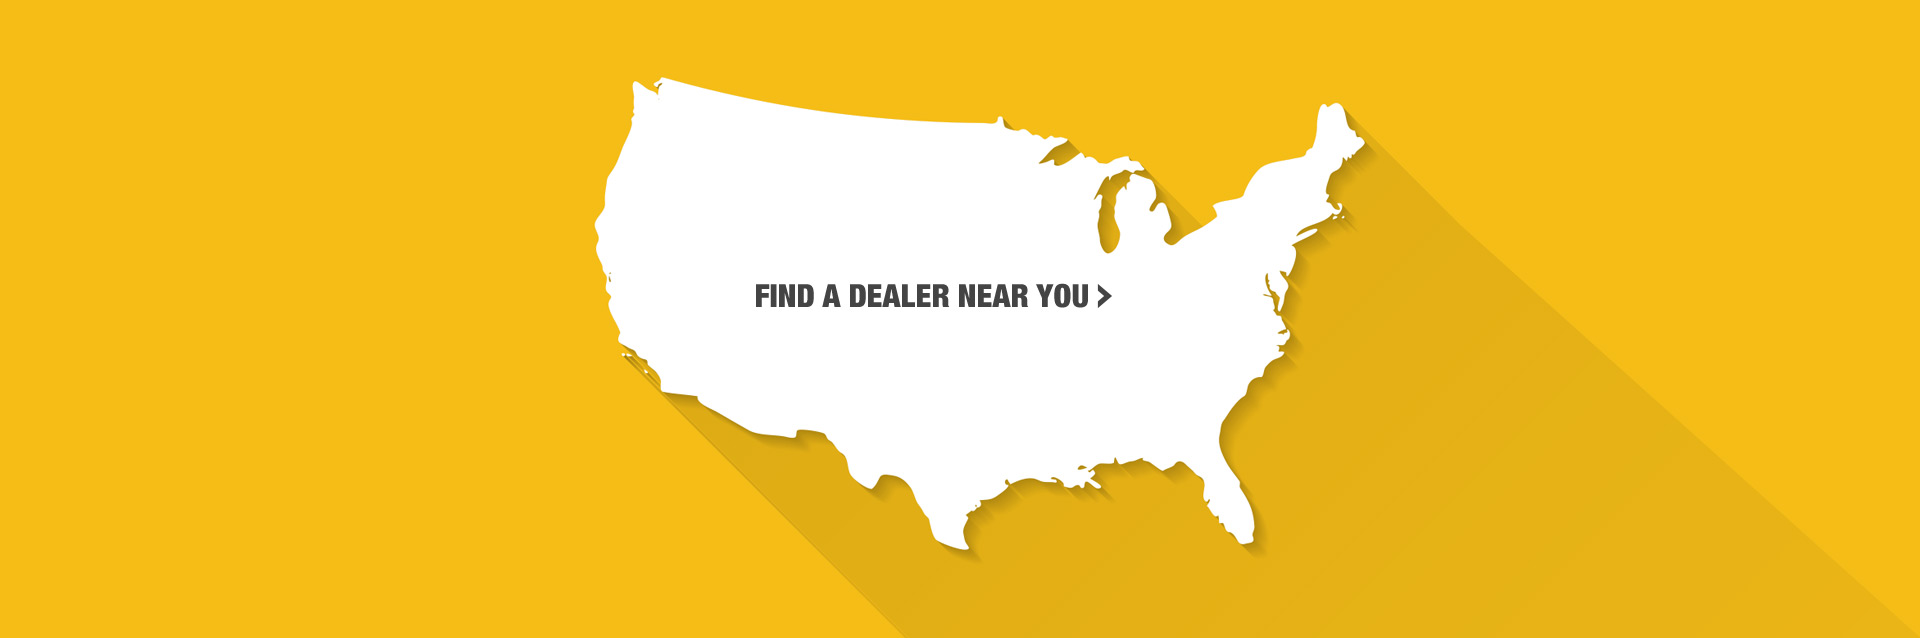 Find a dealer